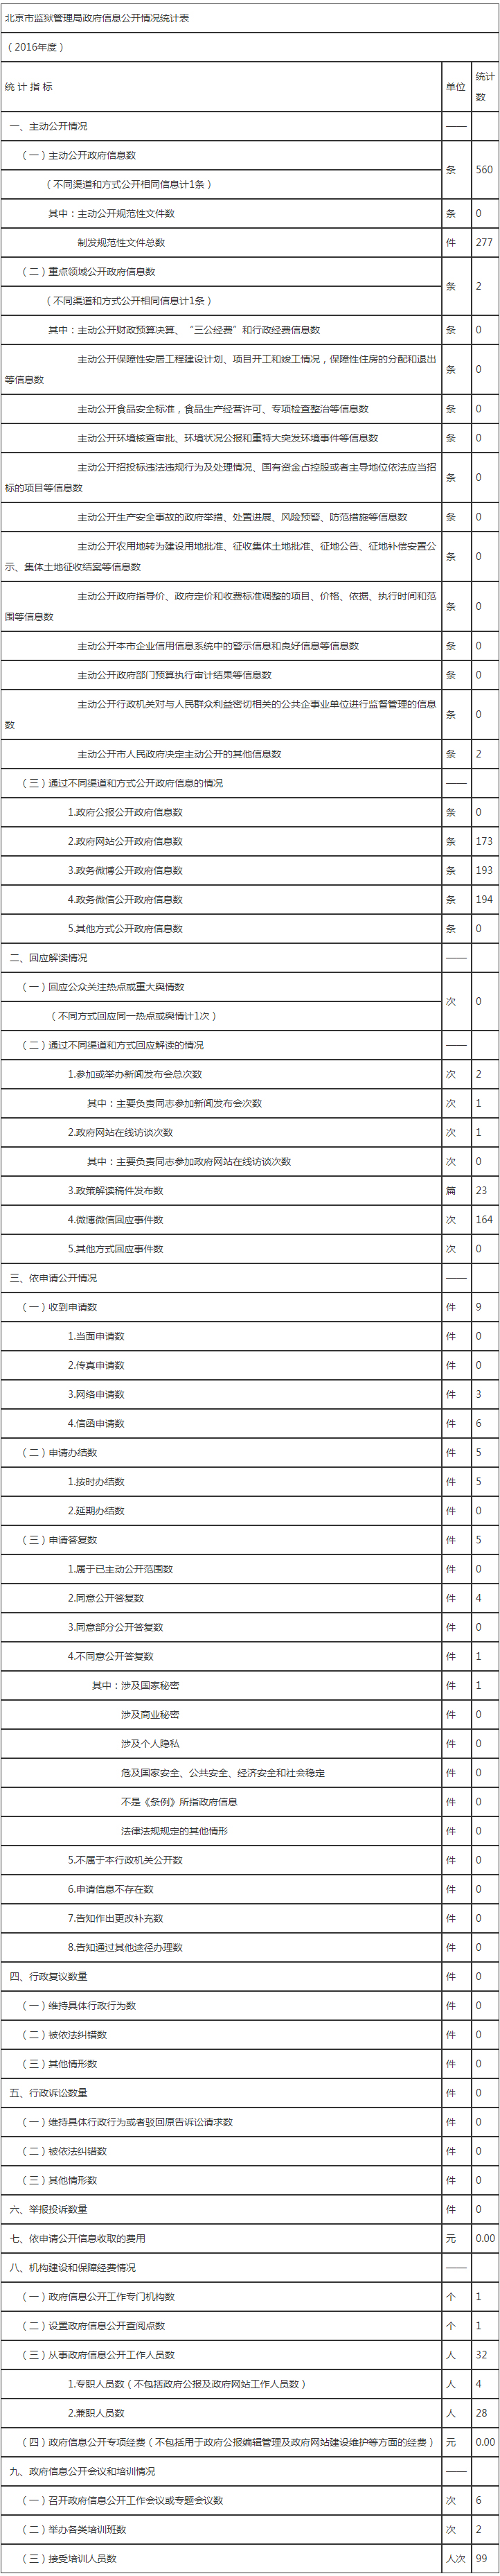 北京市监狱管理局政府信息公开情况统计表